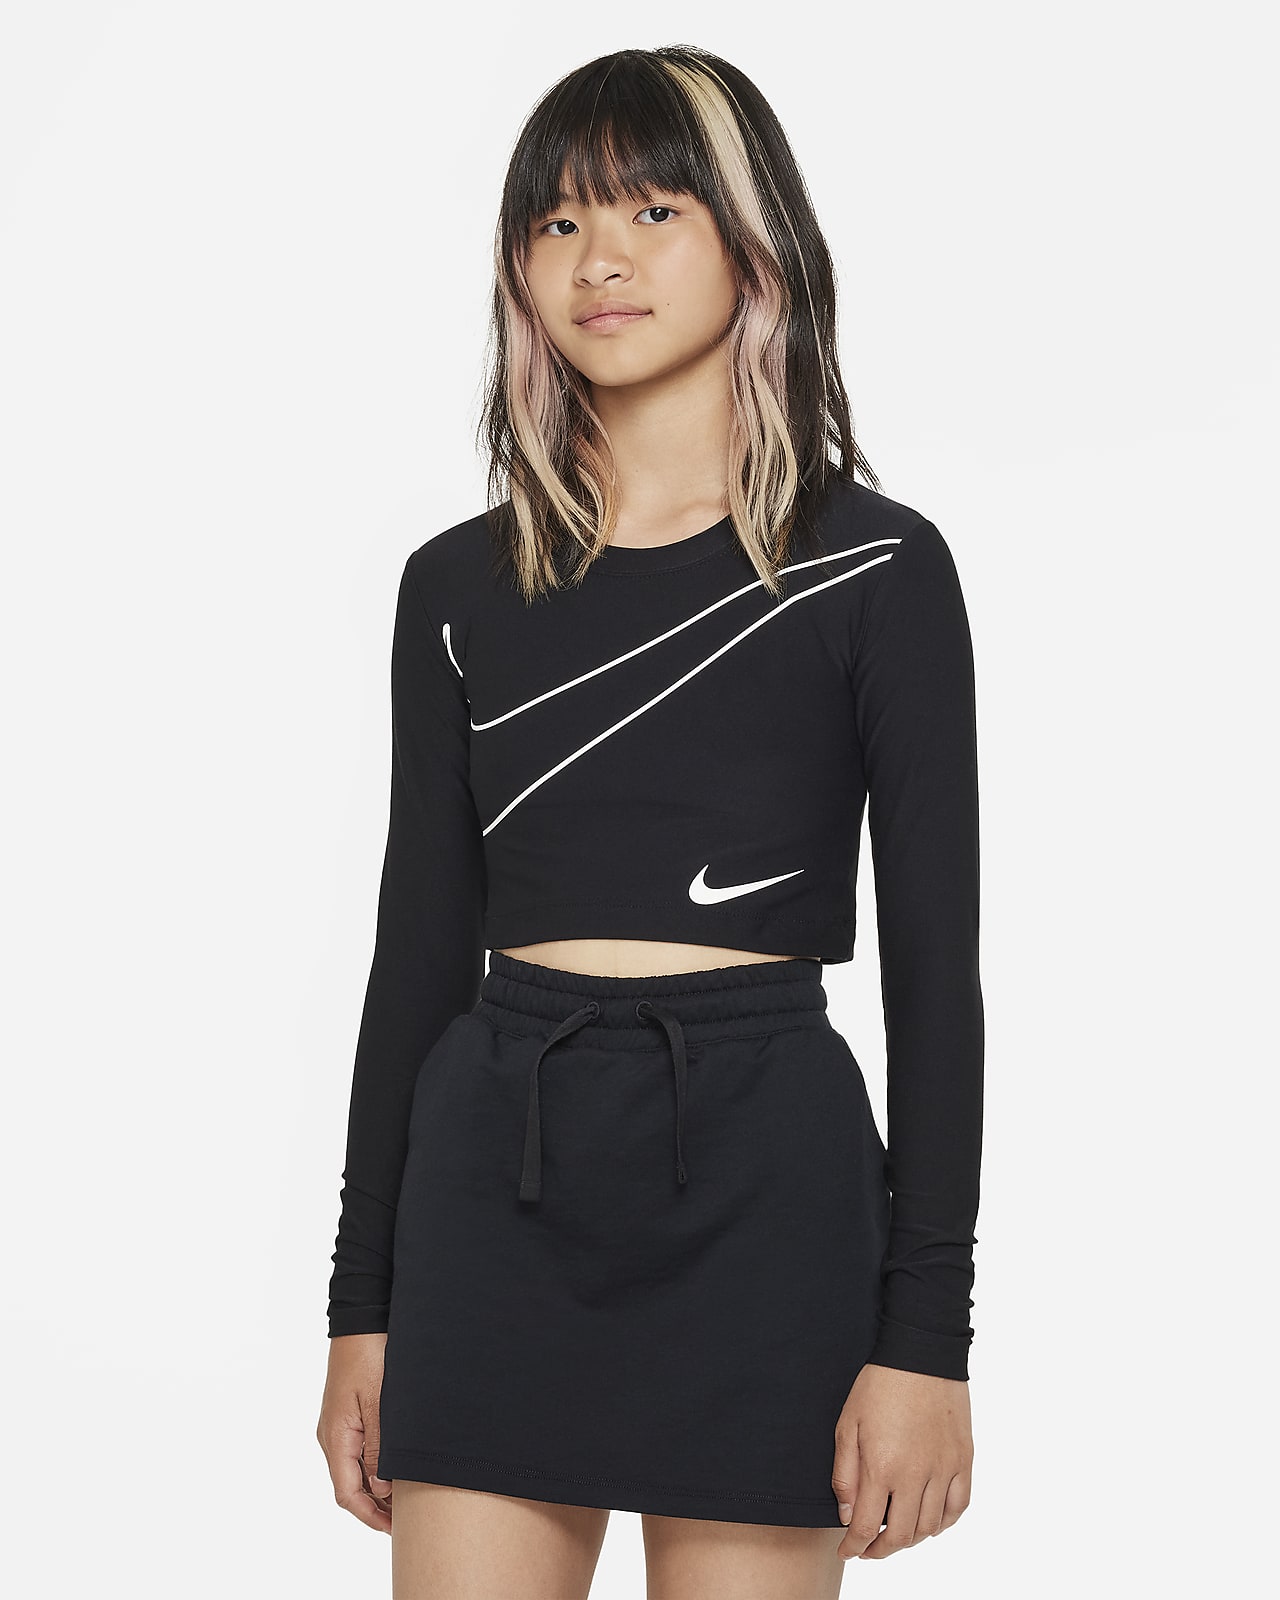 Nike Sportswear Older Kids' (Girls') Long-Sleeve Crop Top